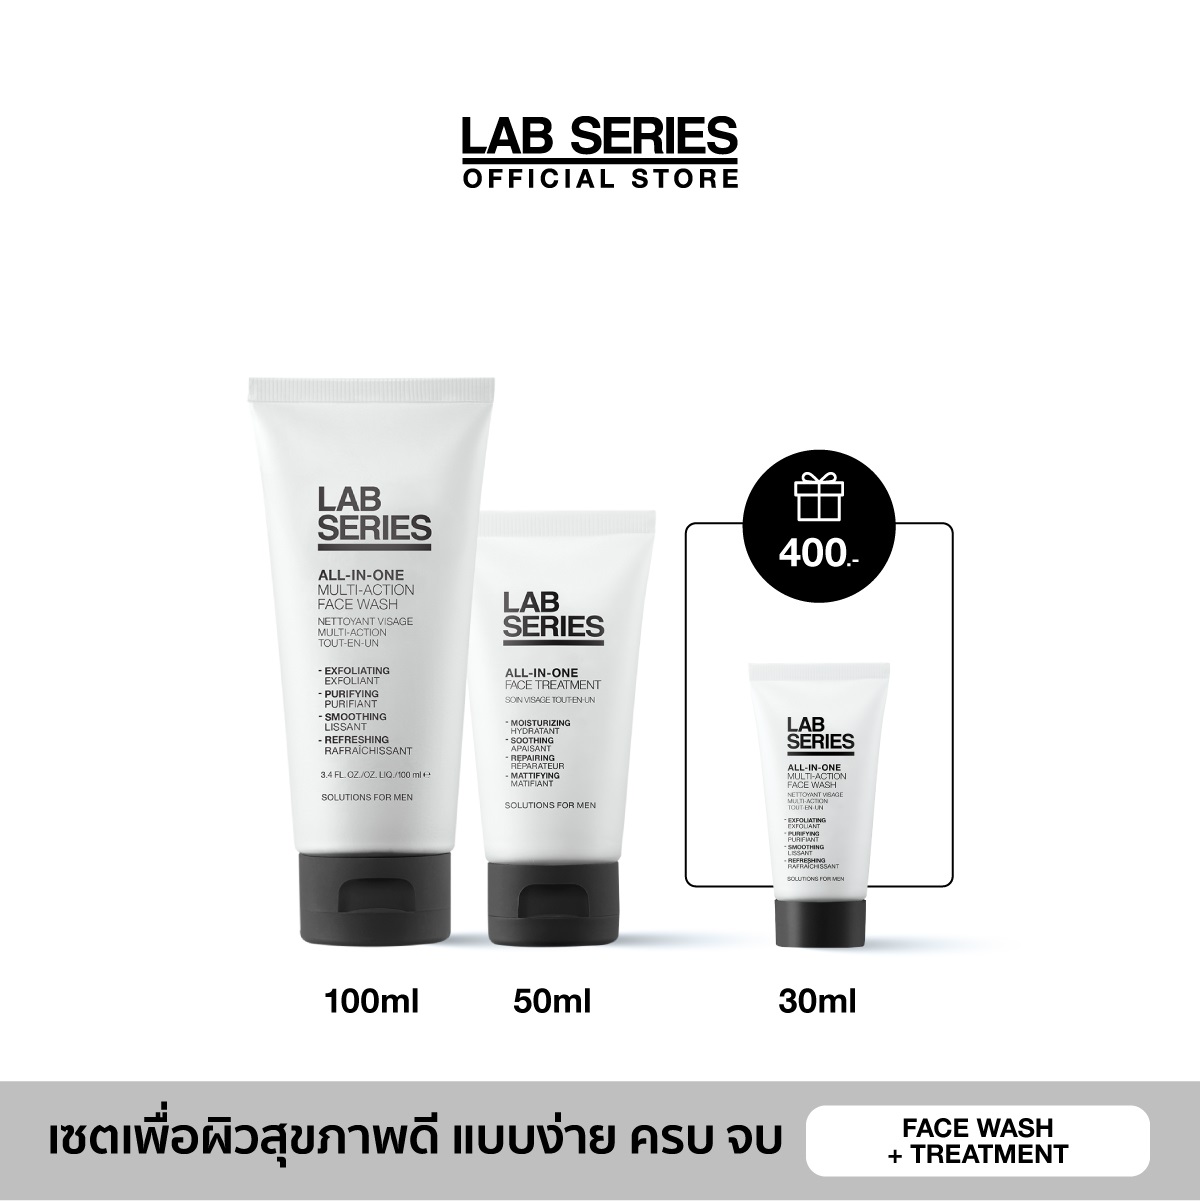 รีวิว LAB SERIES เซต ALL-IN-ONE: All-In-One Multi-Action Face Wash 100ml + All-In-One Face Treatment 50ml + ของขวัญในเซต All-In-One Multi-Action Face Wash 30ml (มูลค่ารวม 2,750.-)